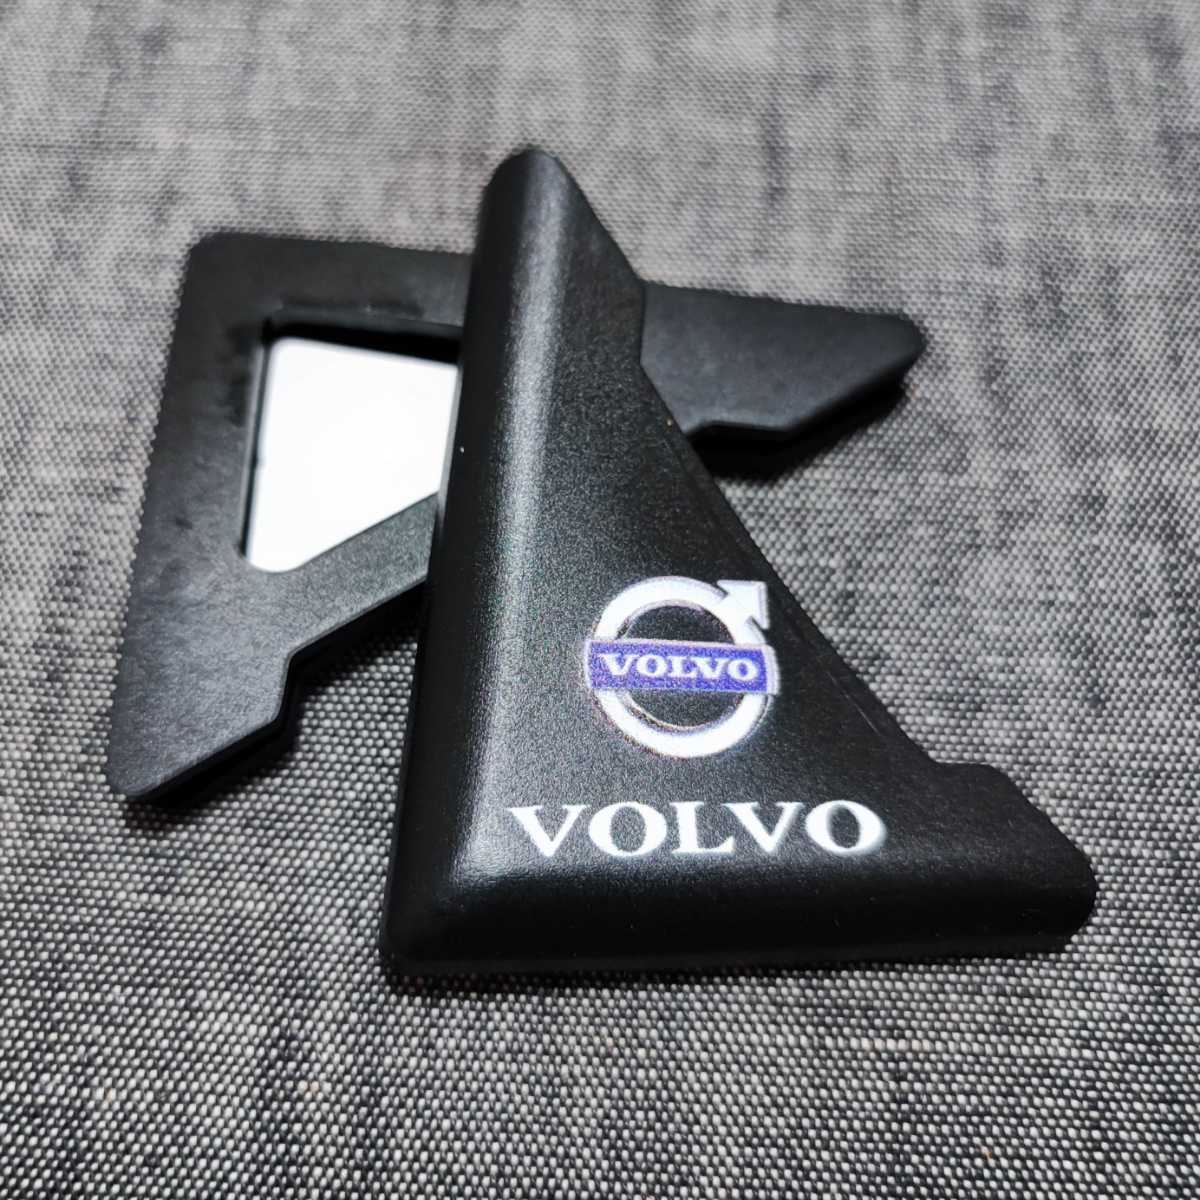  Volvo scratch prevention 3D door edge guard 2P#VOLVO V40 V60 XC60 XC90 V70 V90 S60 XC40 240 Wagon V50 XC70 C70 C30 240 S90 850 Estate 